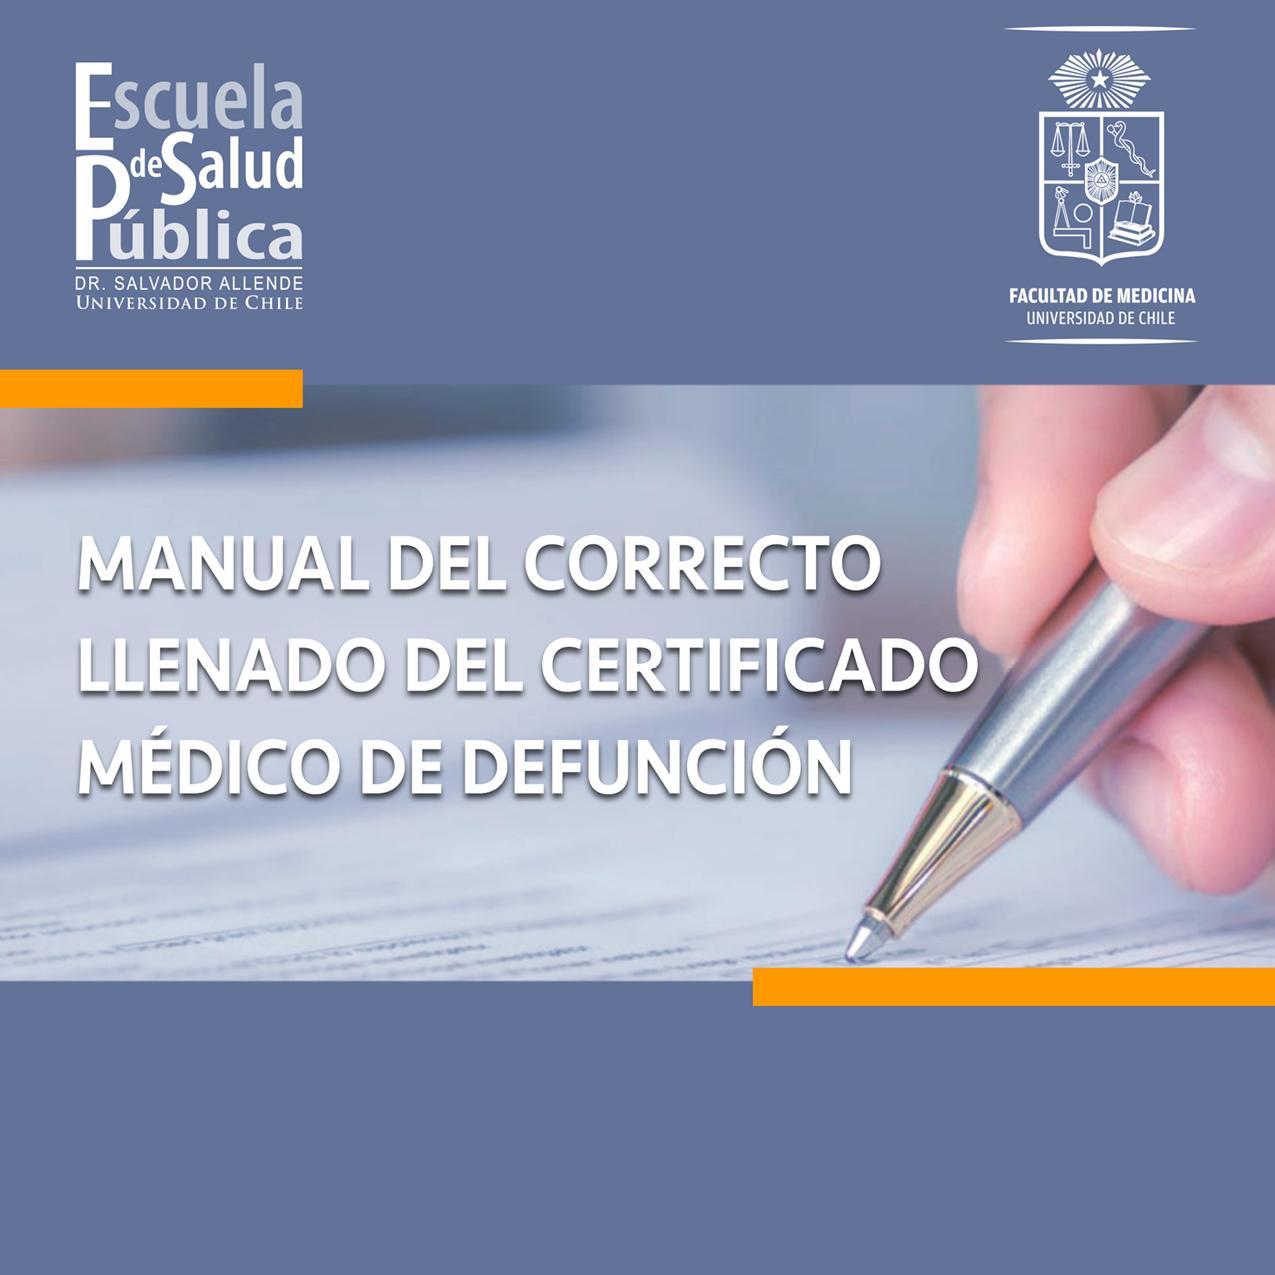 Manual del correcto llenado del Certificado Médico de Defunción (CMD)